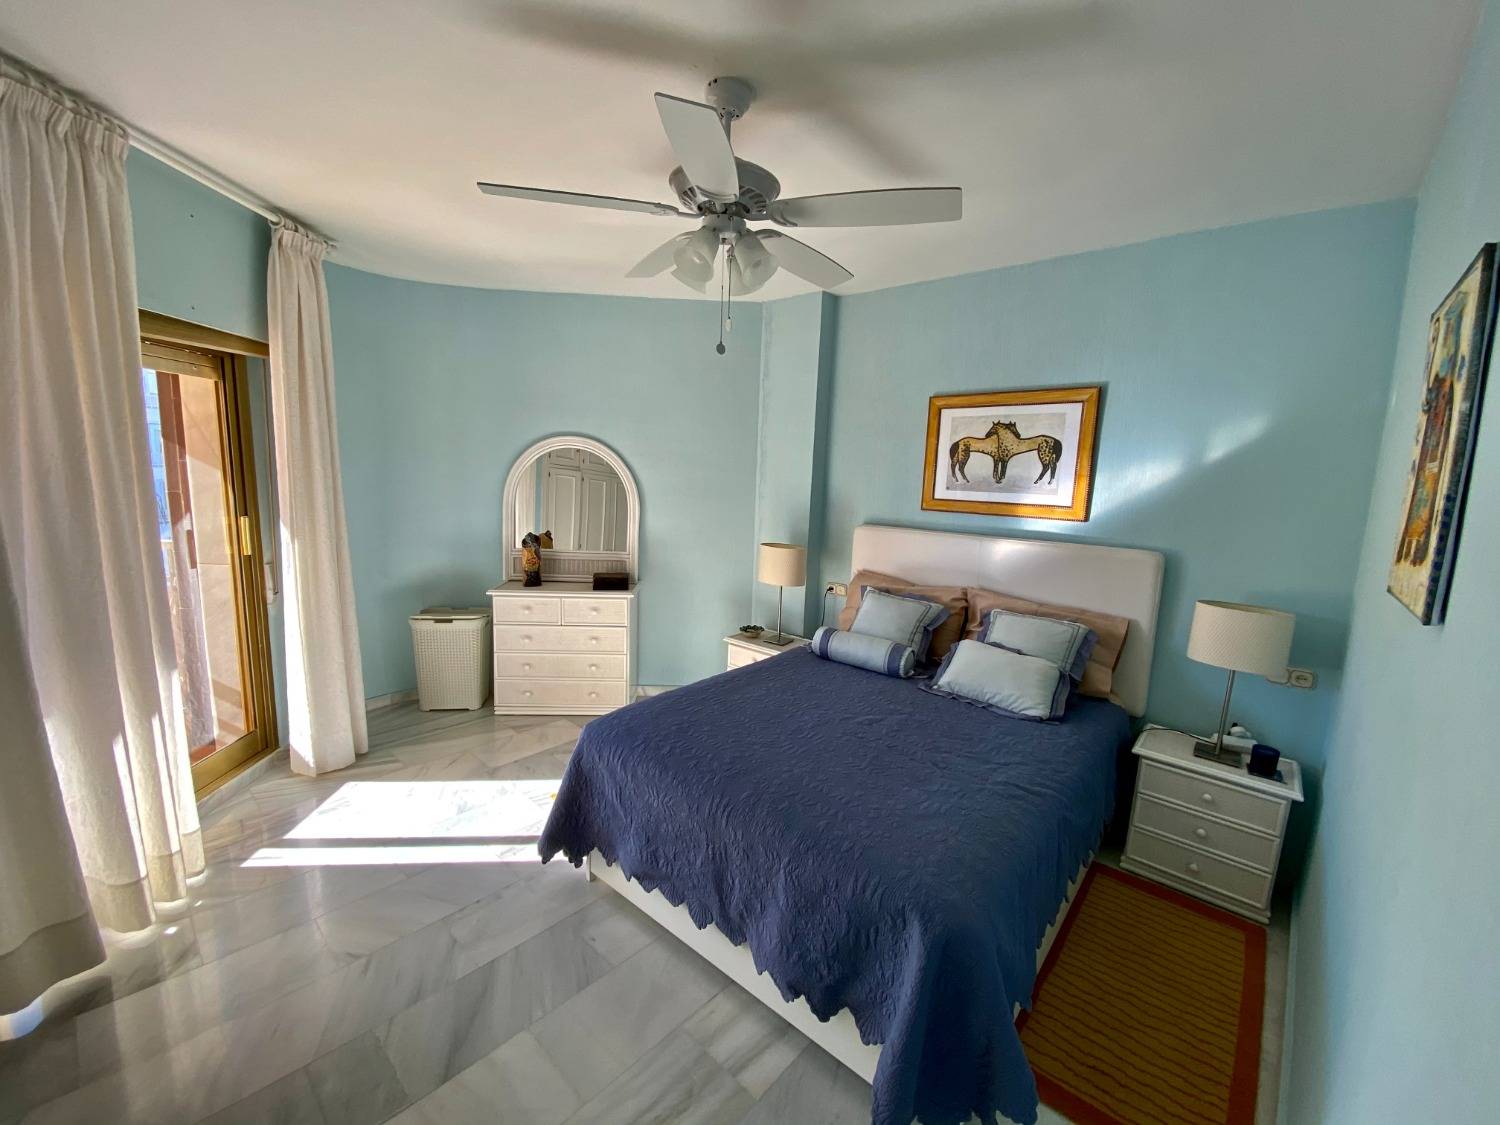 È la tua casa al mare, a Fuengirola, 3 camere da letto, wifi, aria condizionata, divertiti.